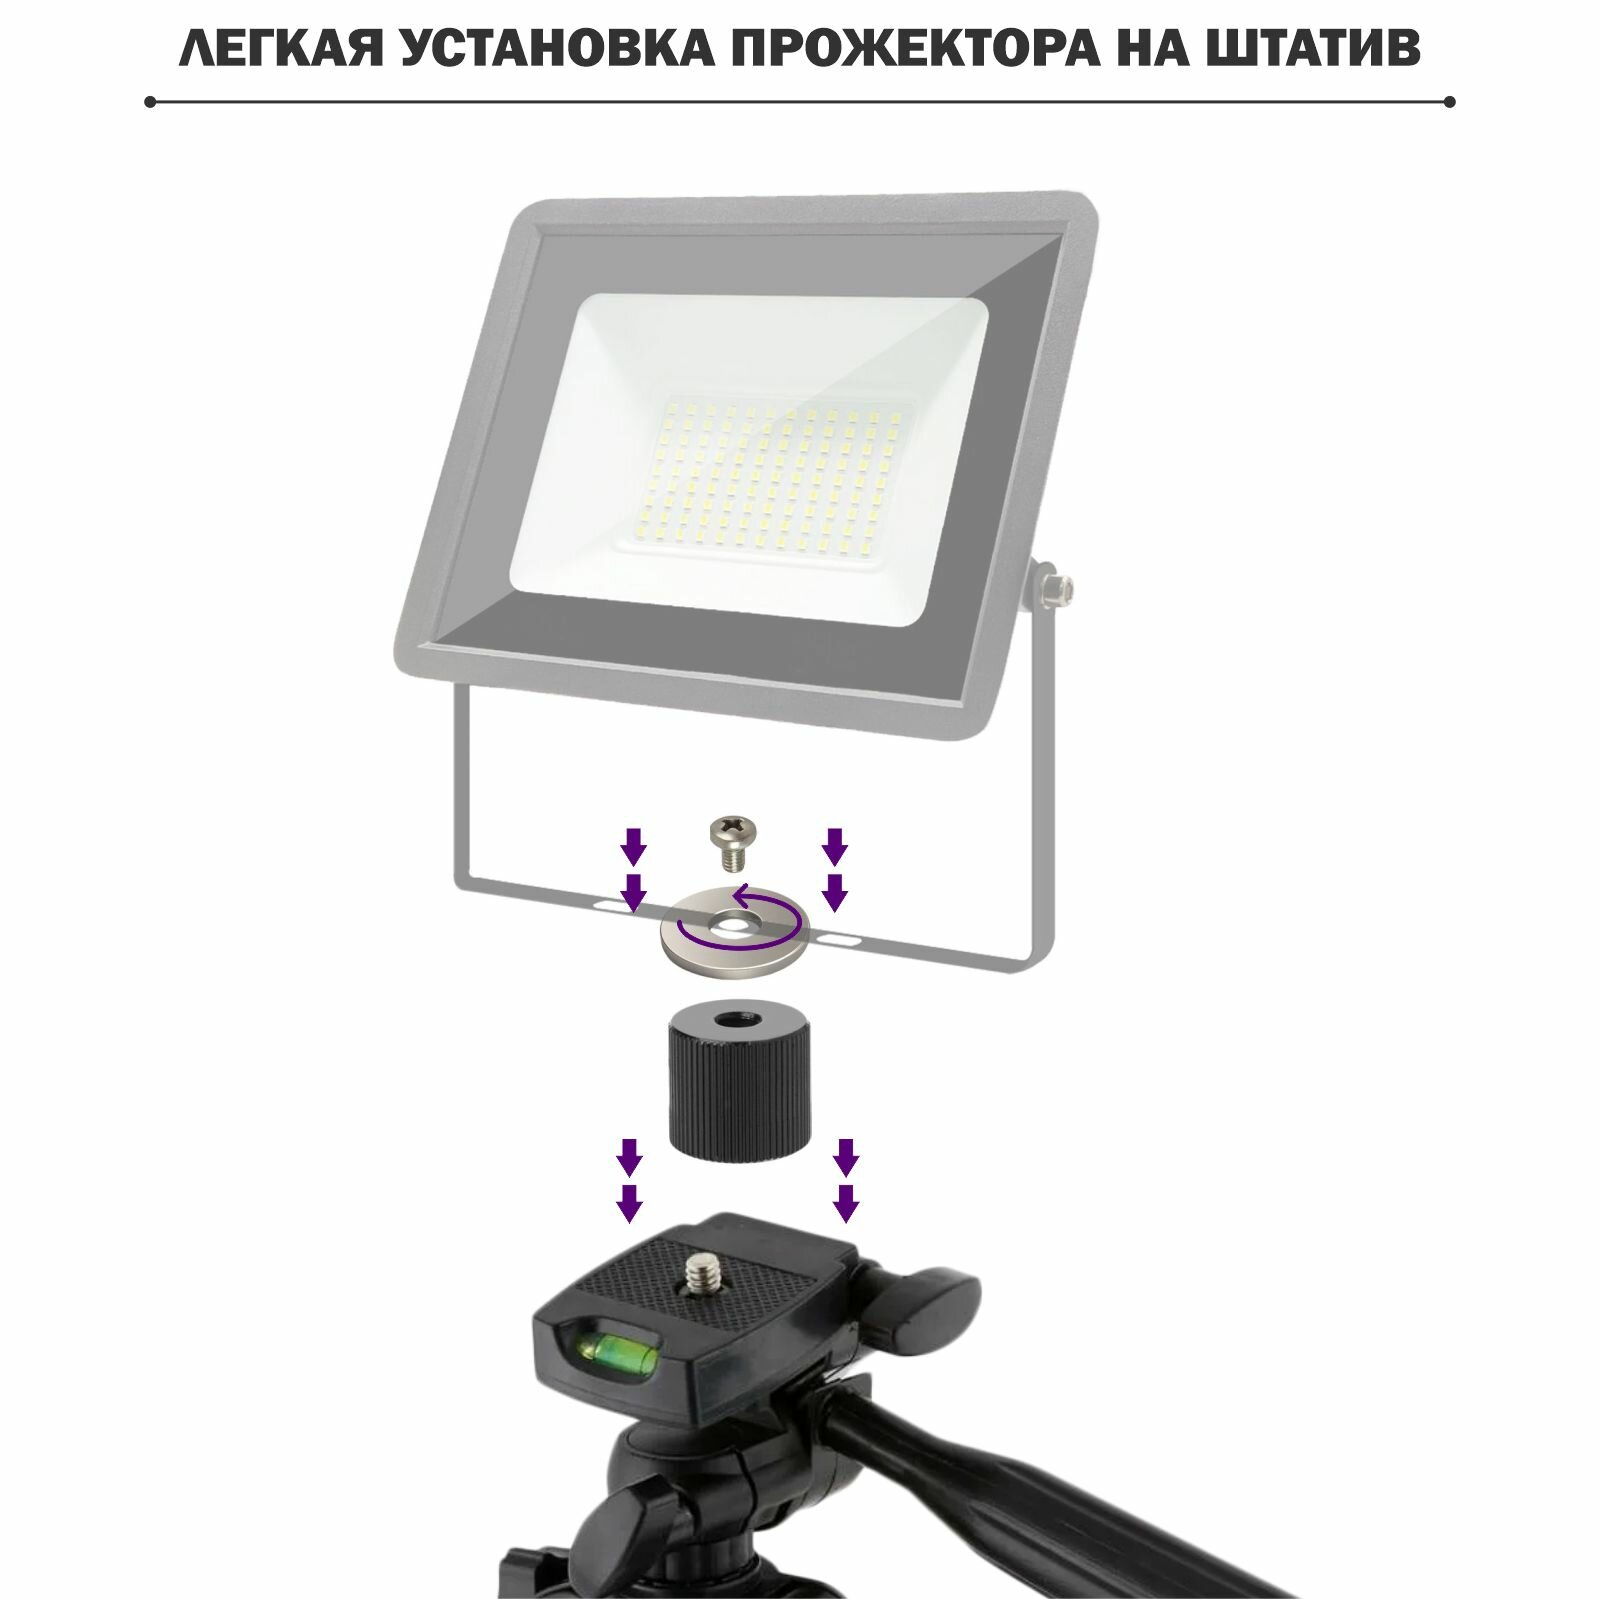 Стойка атив Tripod-3110-PRJ для светодиодных строительных прожекторов весом до 1 кг